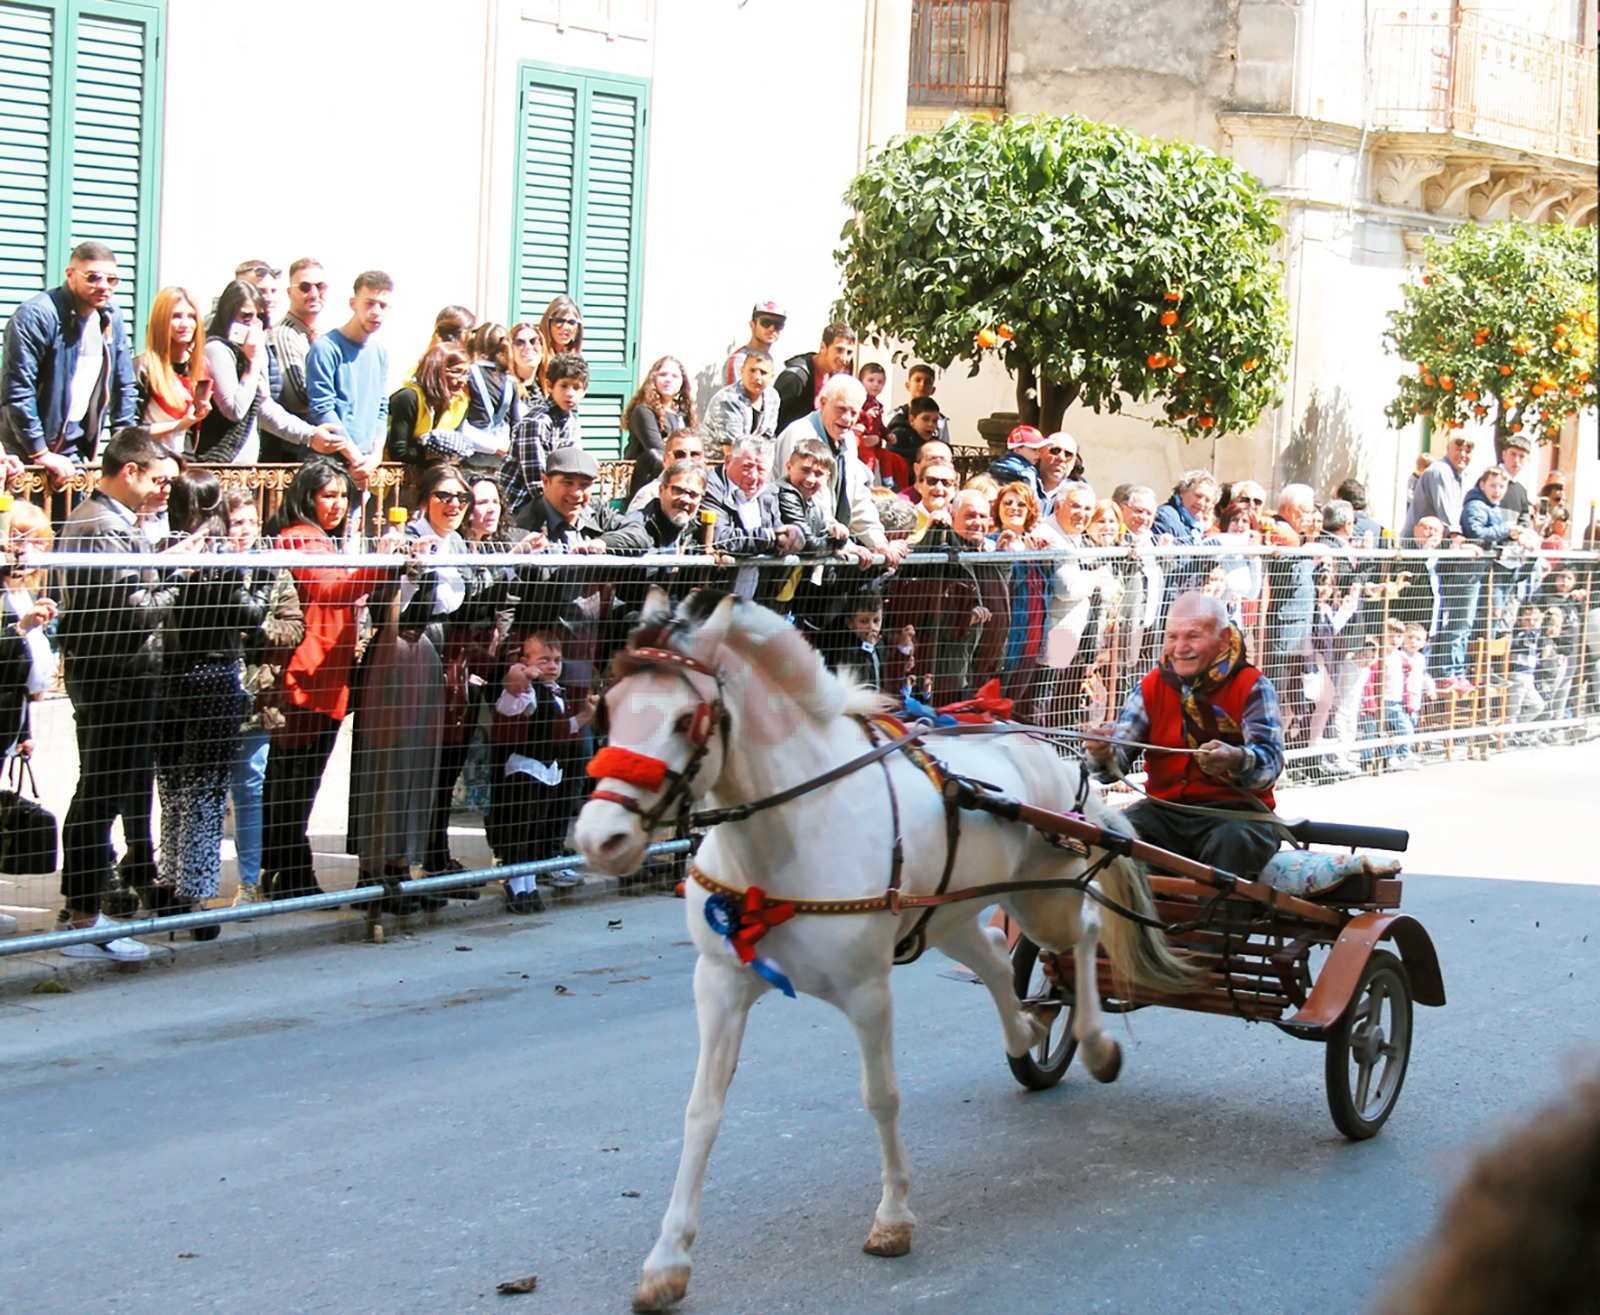 Via libera del sindaco Spadola alla sfilata dei carretti per il 19 marzo, domenica di “San Giuseppe”